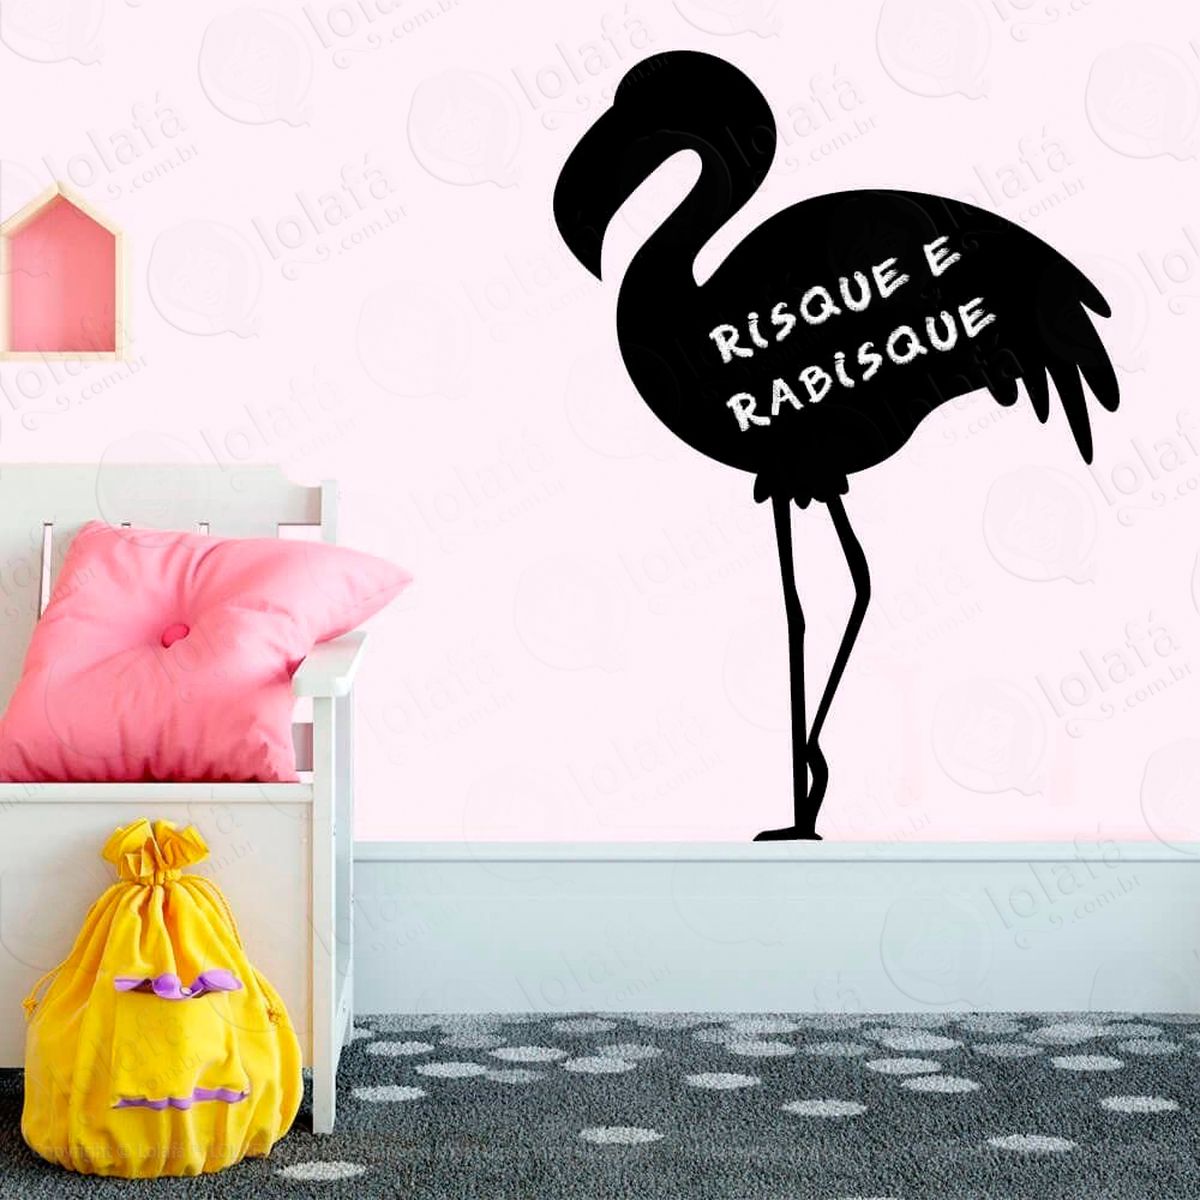 flamingo adesivo lousa quadro negro de parede para escrever com giz - mod:238